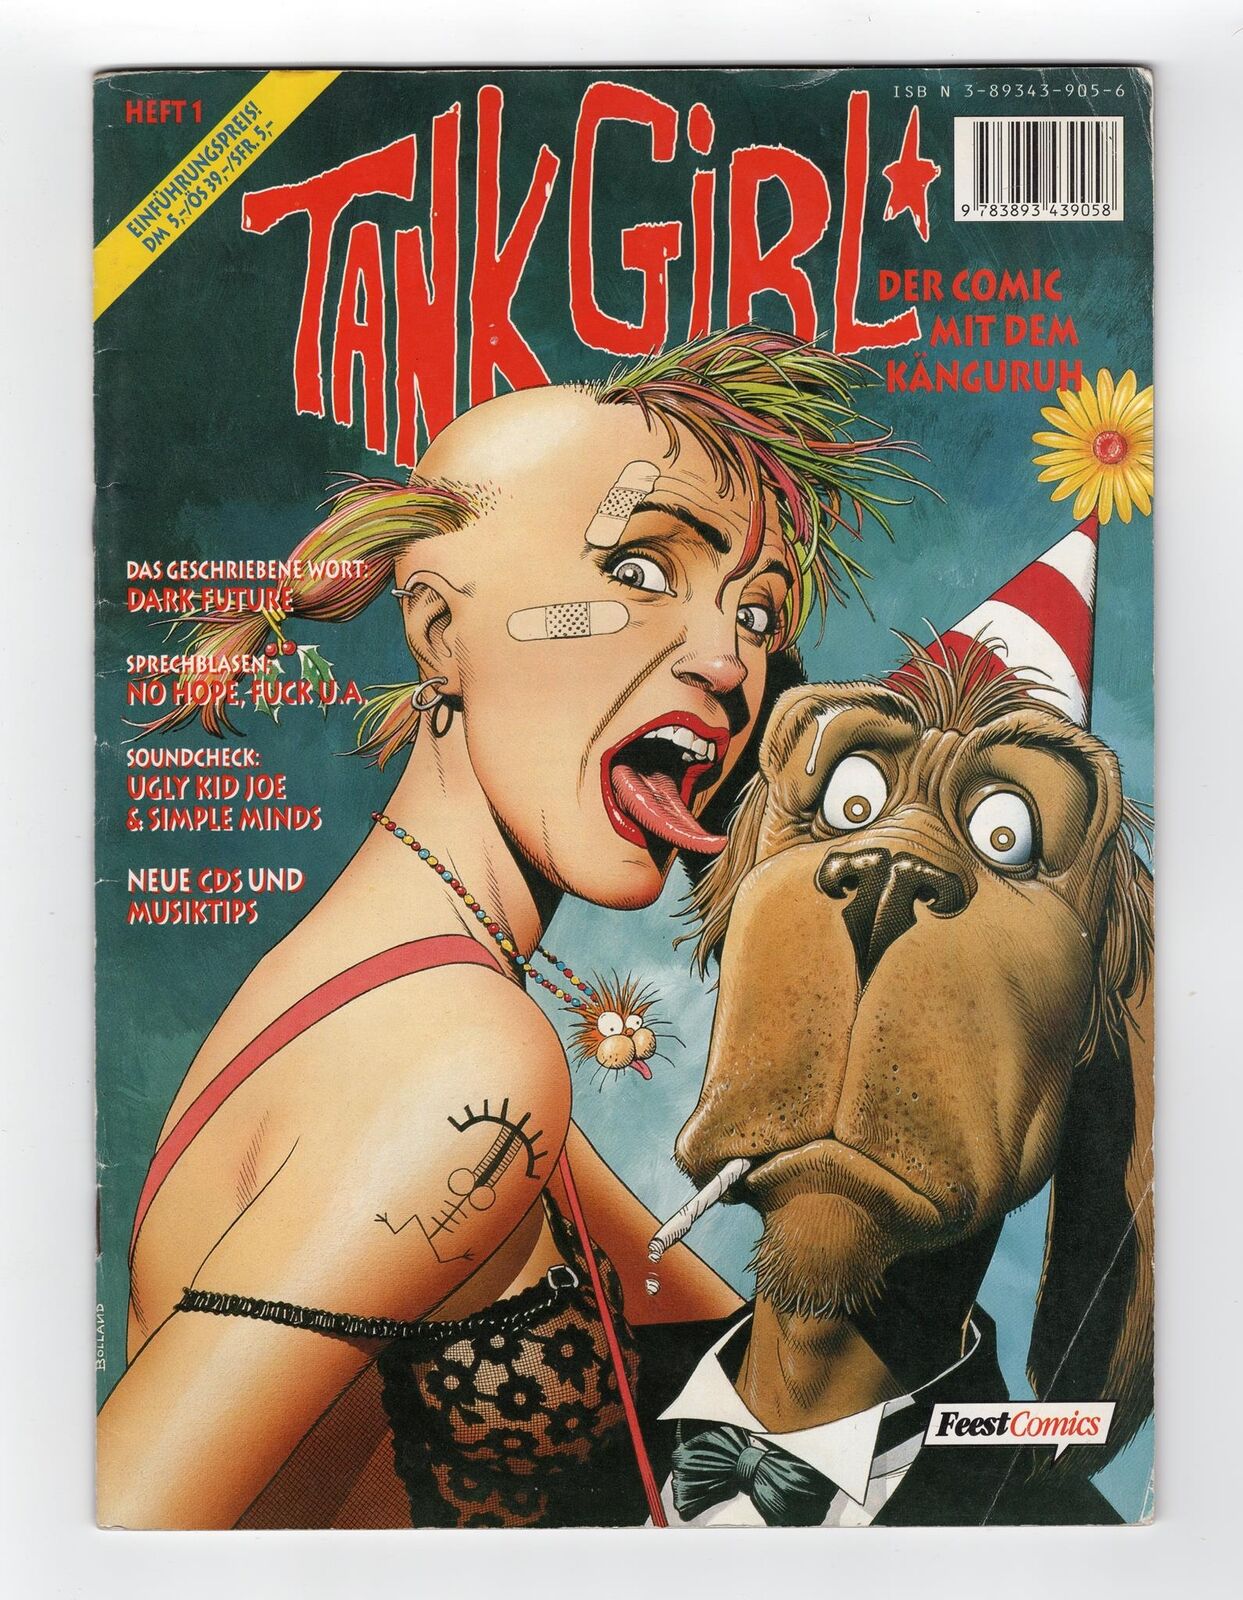 1988 DEADLINE #1 TANK GIRL #1 1ST APP OF TANK GIRL KEY GRAIL RARE UK GERMAN